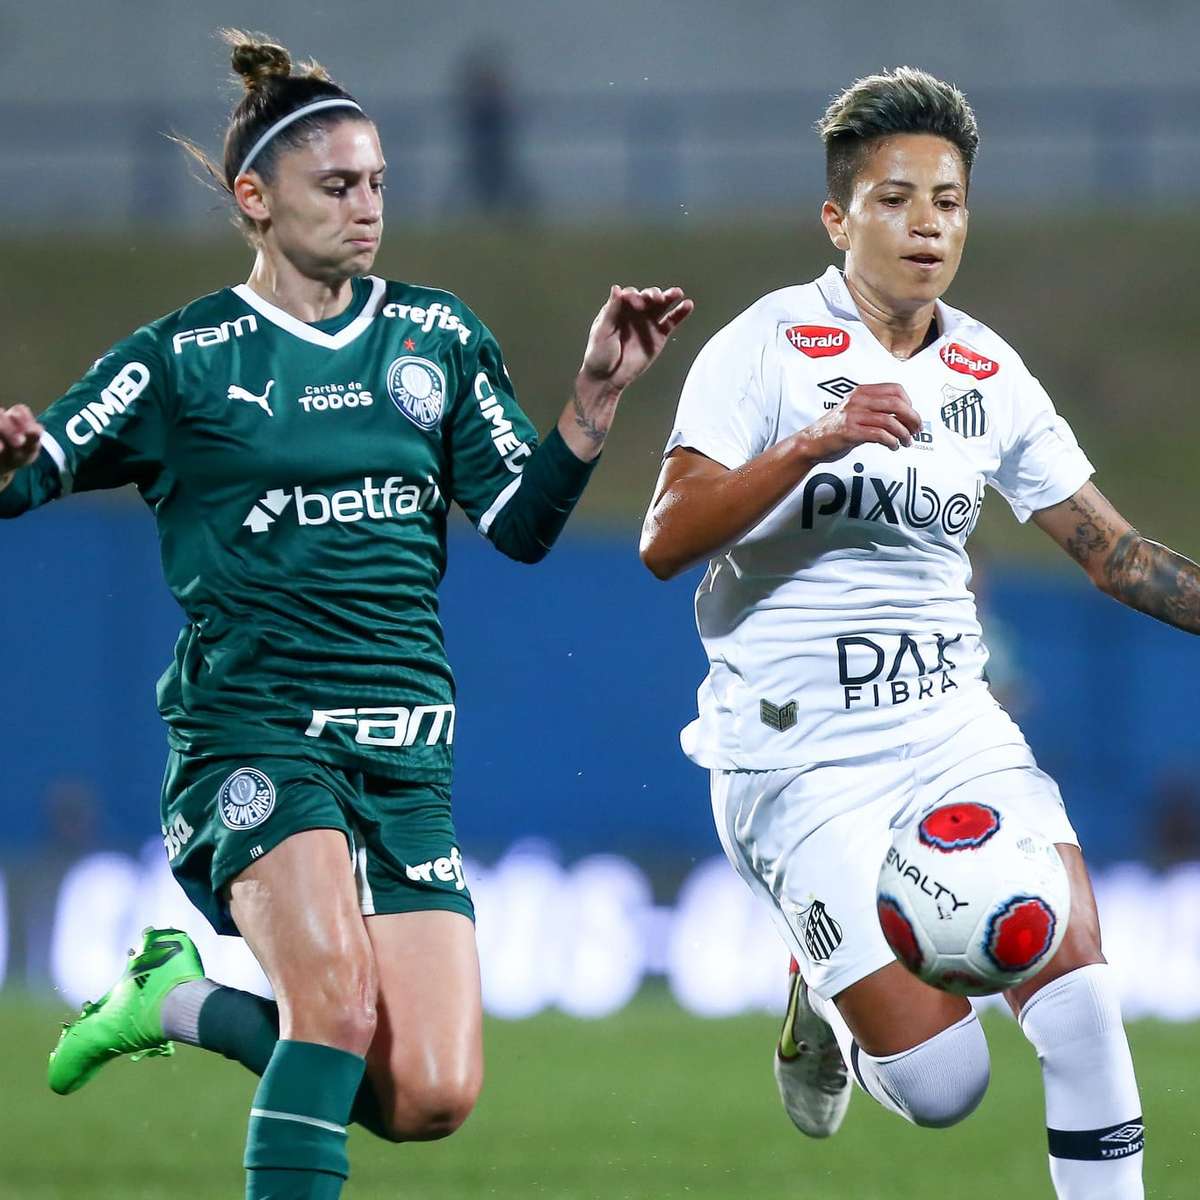 Feminino: Palmeiras bate Santos e é campeão paulista após 21 anos